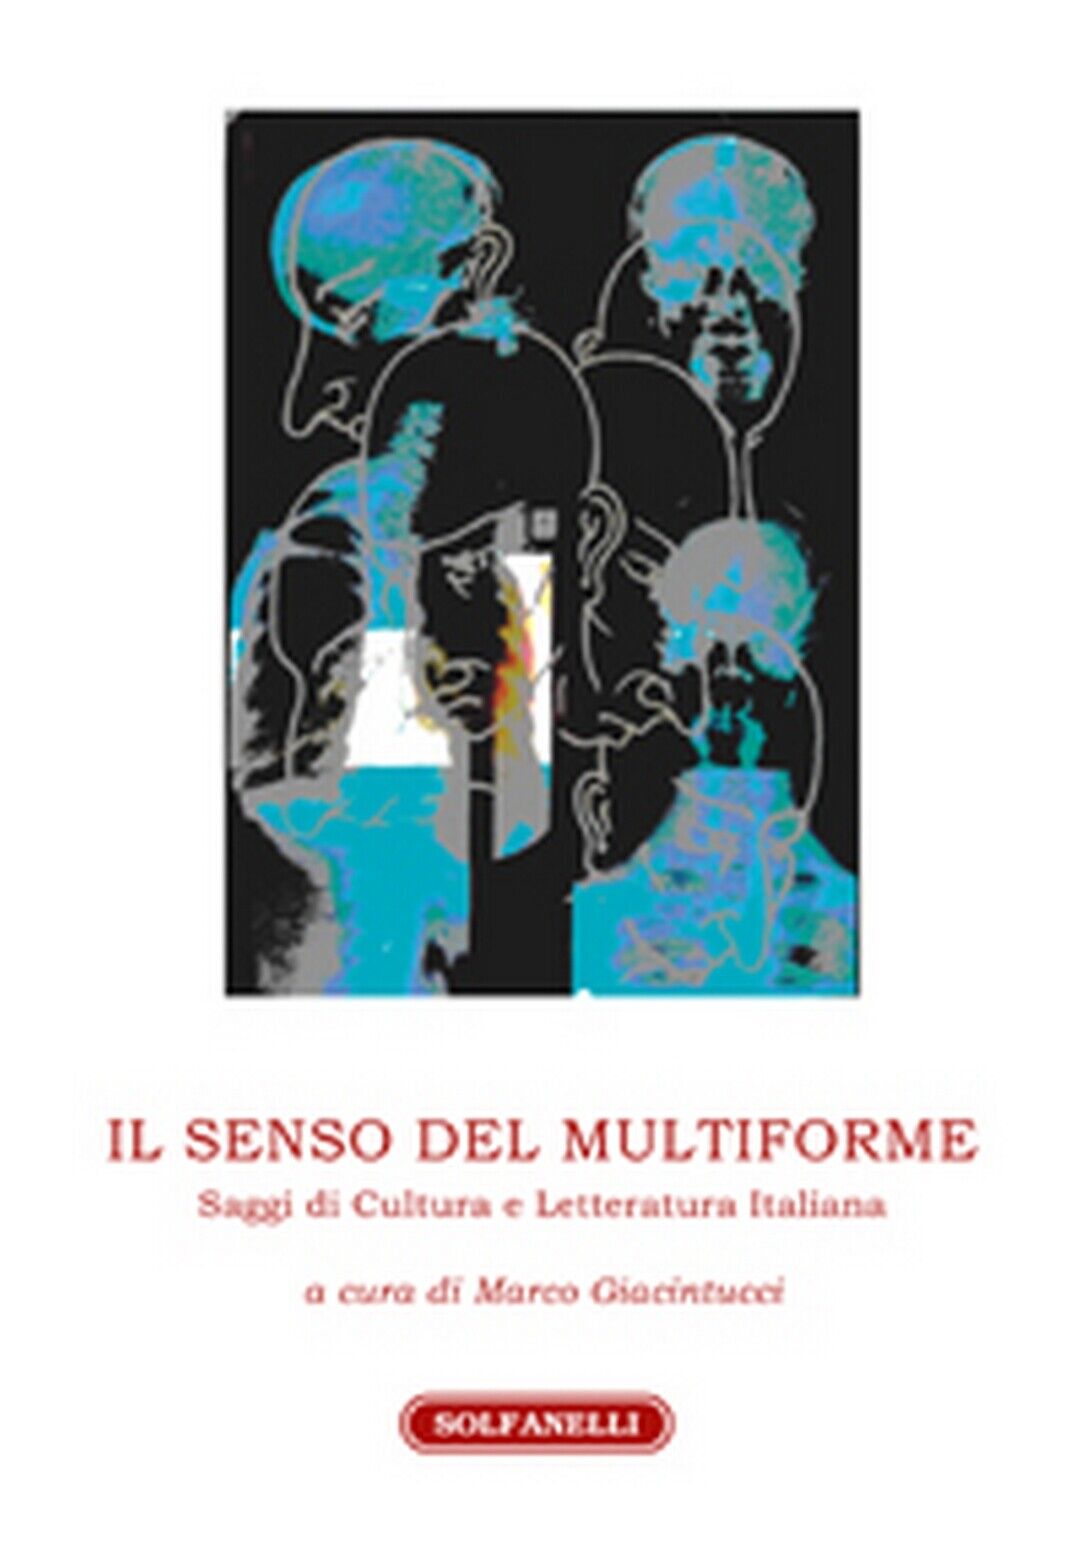 IL SENSO DEL MULTIFORME Saggi di Cultura e Letteratura Italiana (Giantucci)